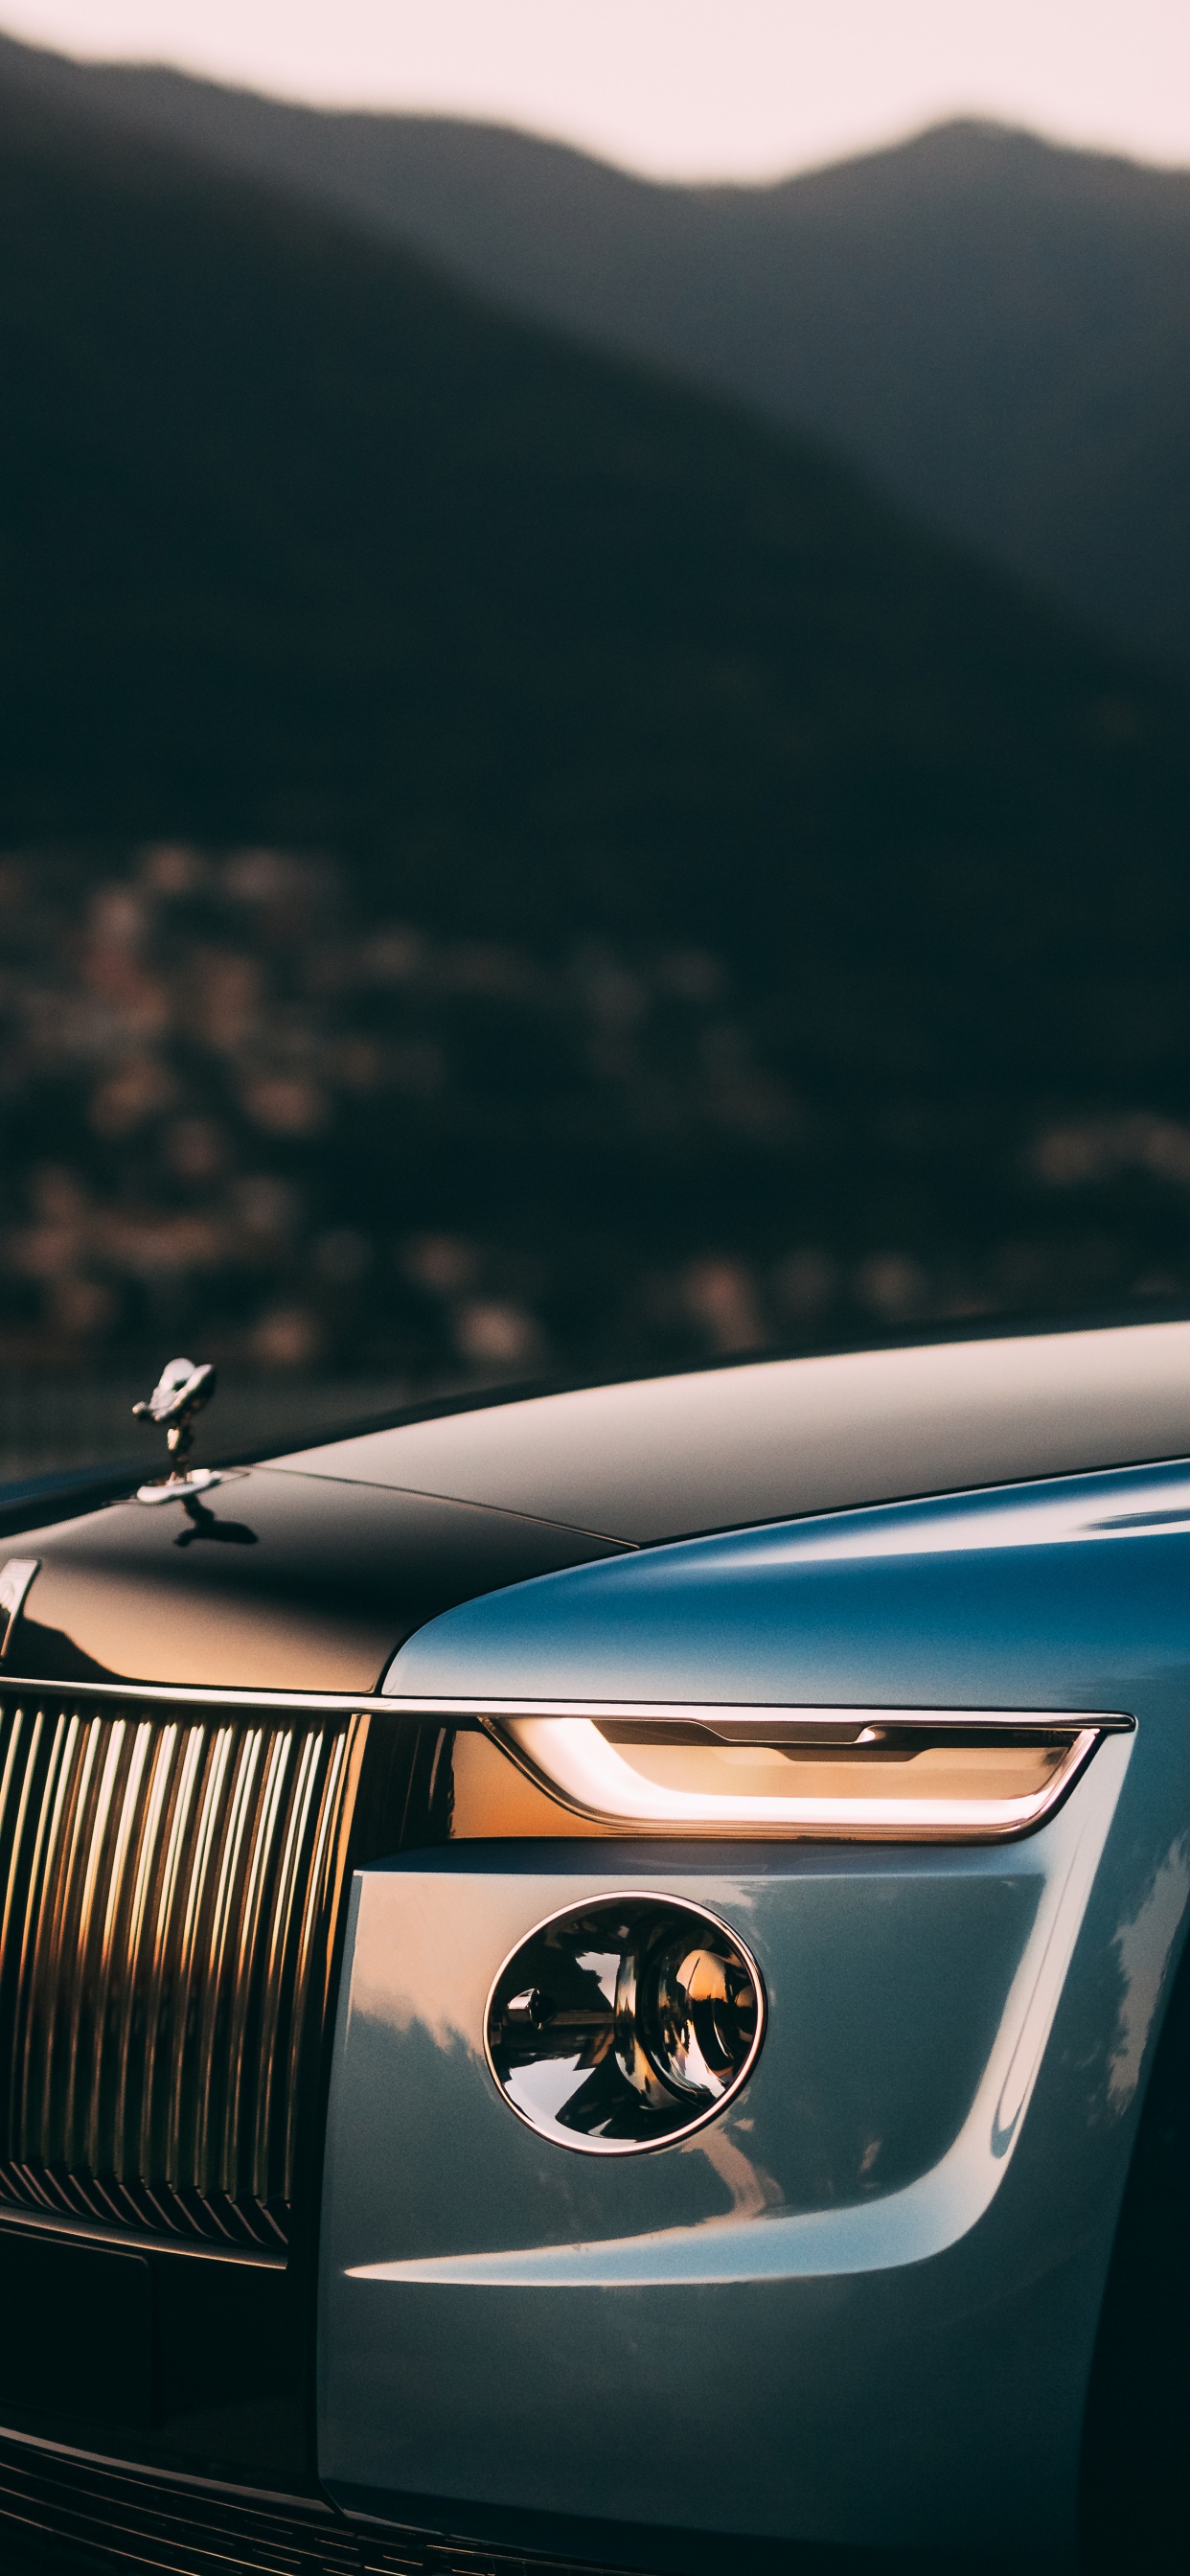 Nếu bạn đam mê sự sang trọng và đẳng cấp, đừng bỏ lỡ bức ảnh về chiếc xe sang Rolls-Royce Boat Tail. Thiết kế đặc biệt và độc đáo của chiếc xe này sẽ khiến bạn phải ngưỡng mộ và cảm nhận được sự đẳng cấp của nó. 